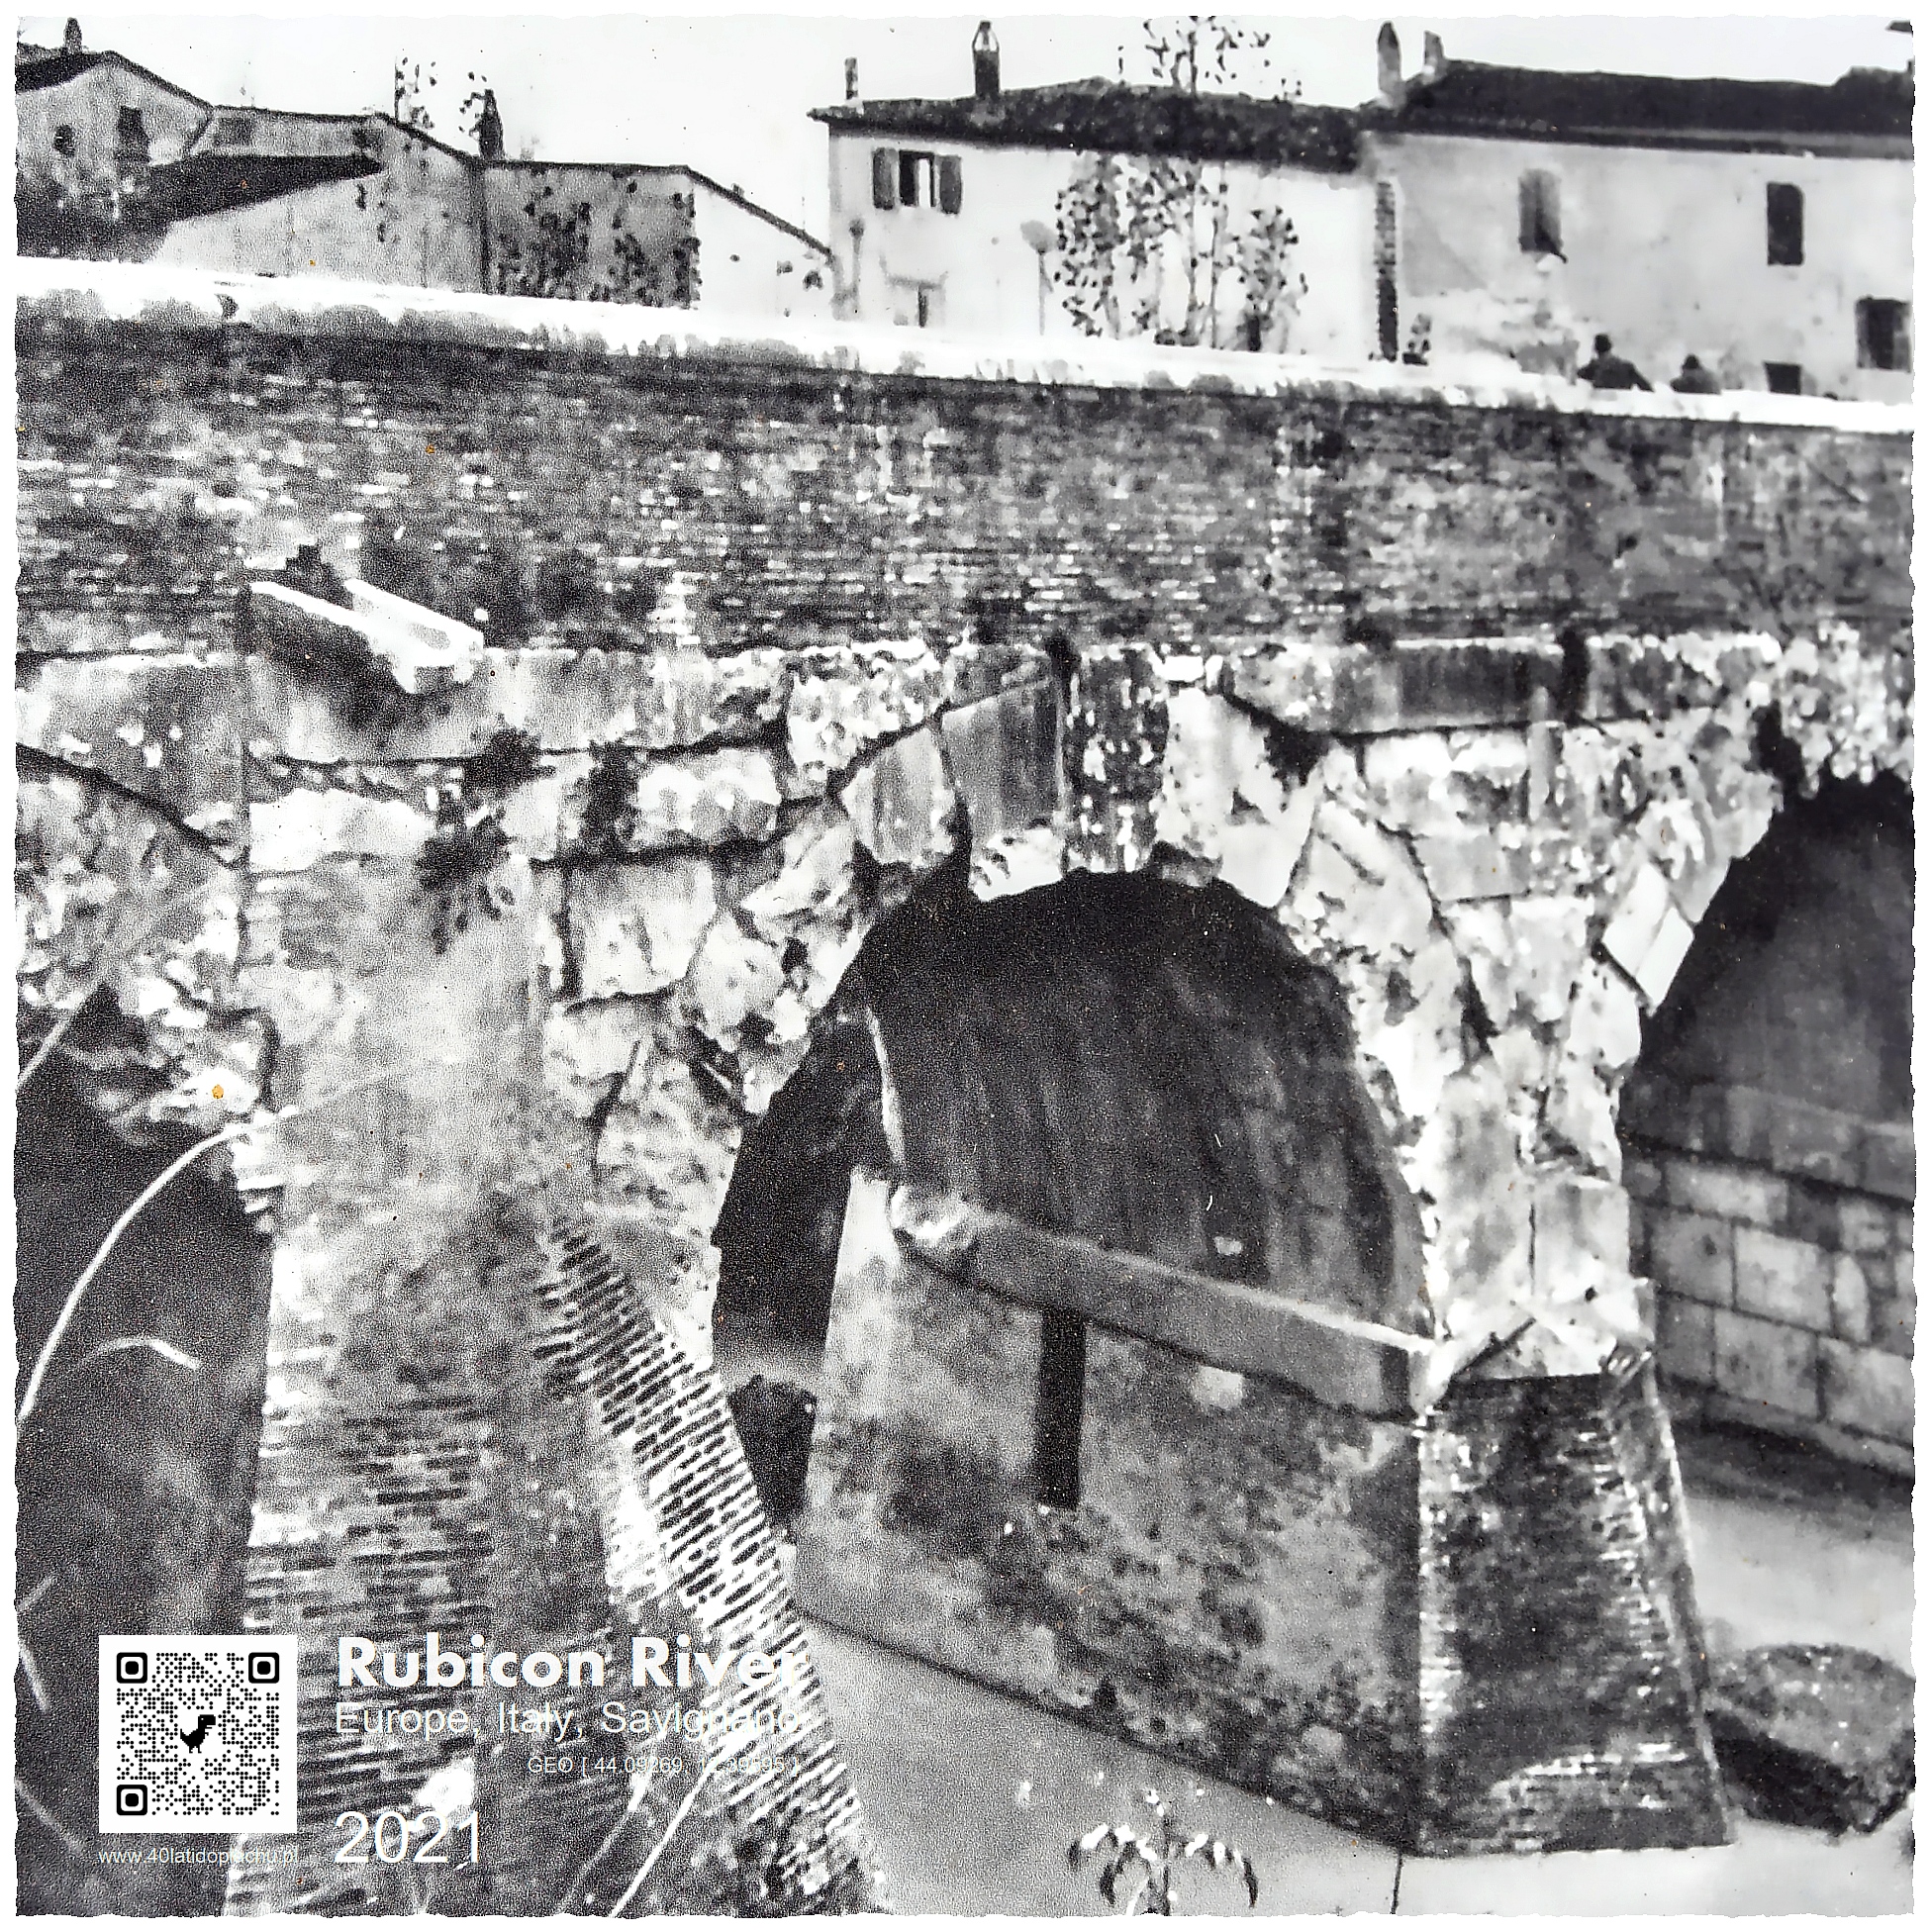 Włochy most na rzece Rubicon stare zdjęcie